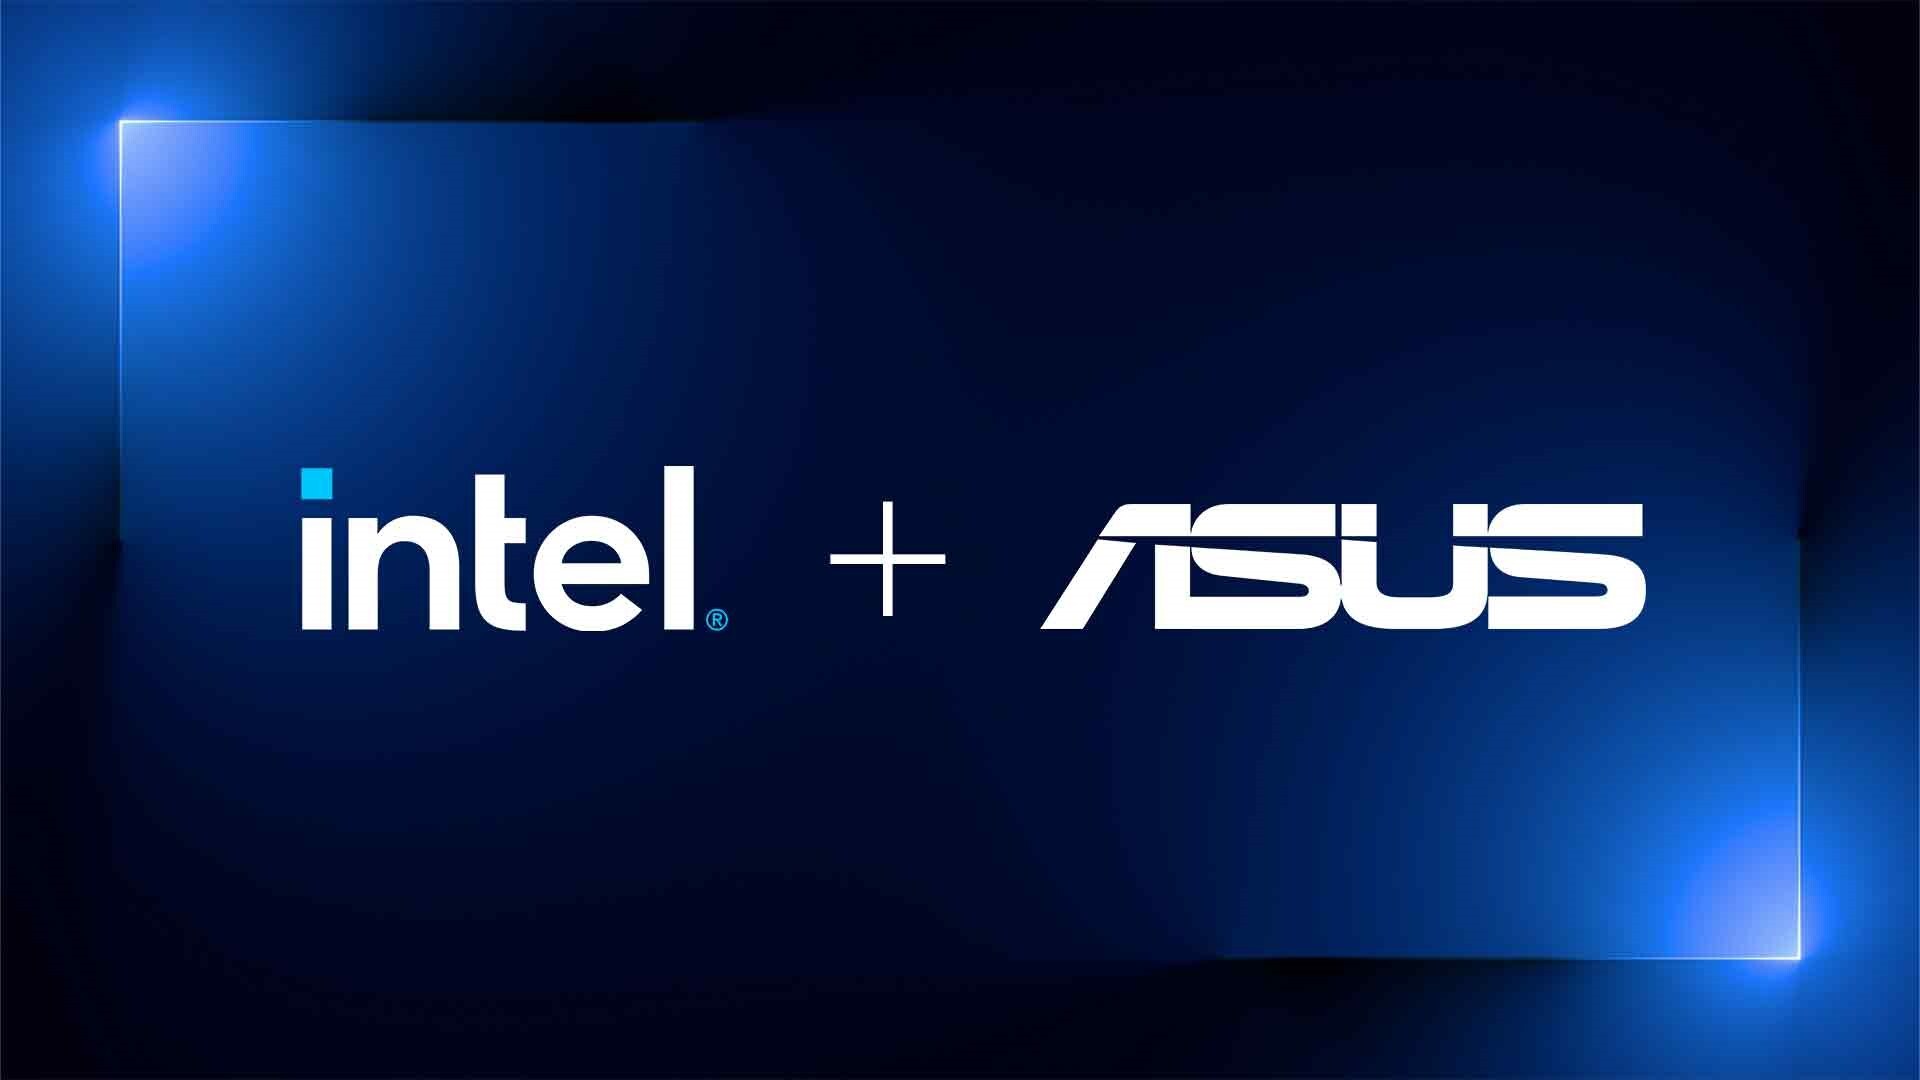 Intel y ASUS anuncian acuerdo para impulsar la línea NUC